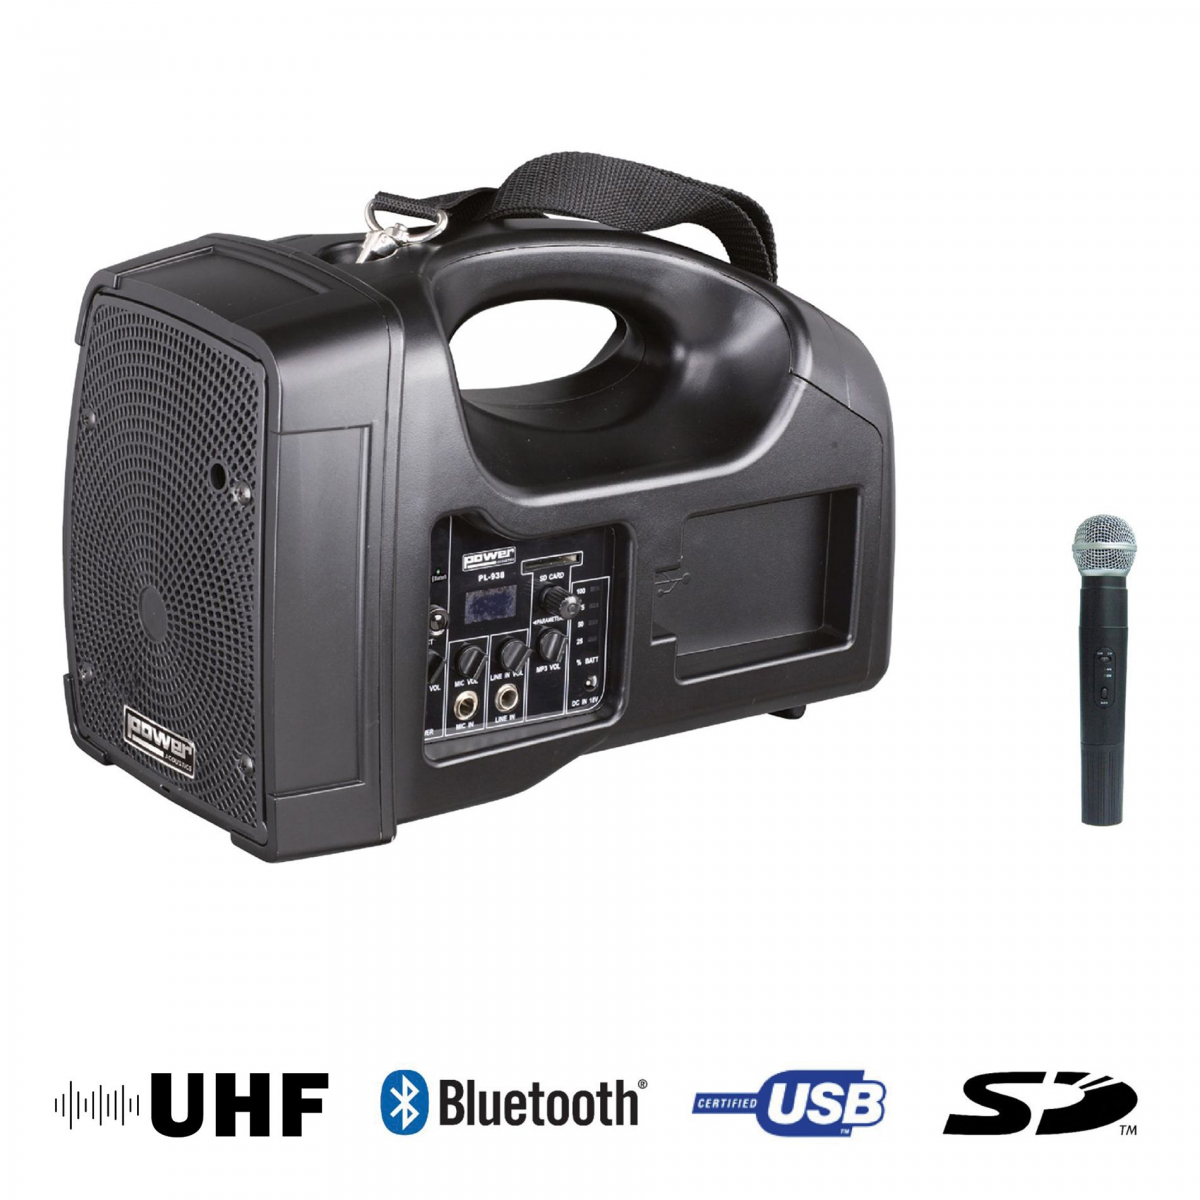 Sonos portables sur batteries - Power Acoustics - Sonorisation - BE1400 UHF